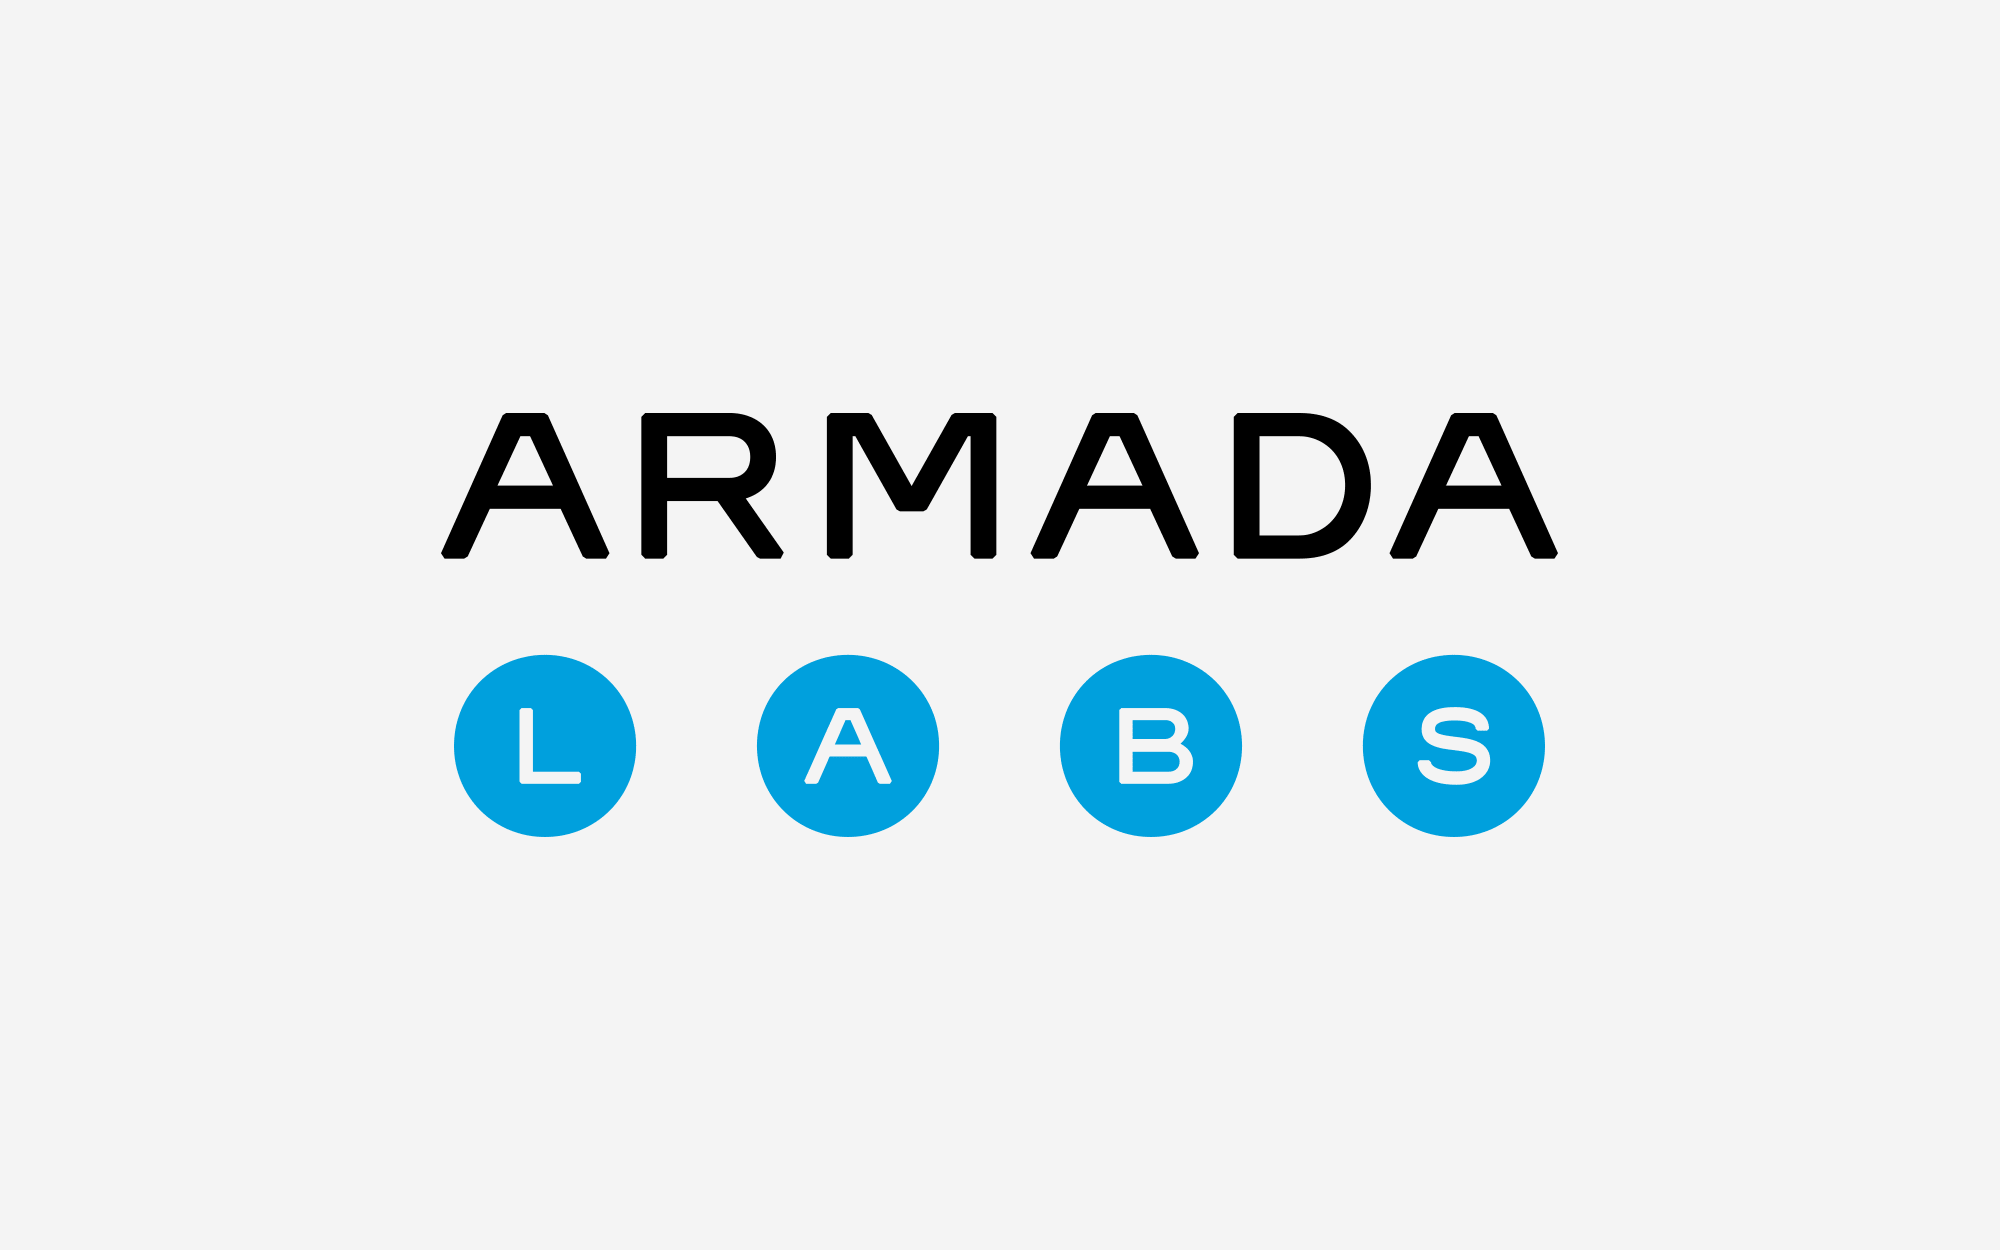 Логотип для разработчика программного обеспечения - компании Armada labs.